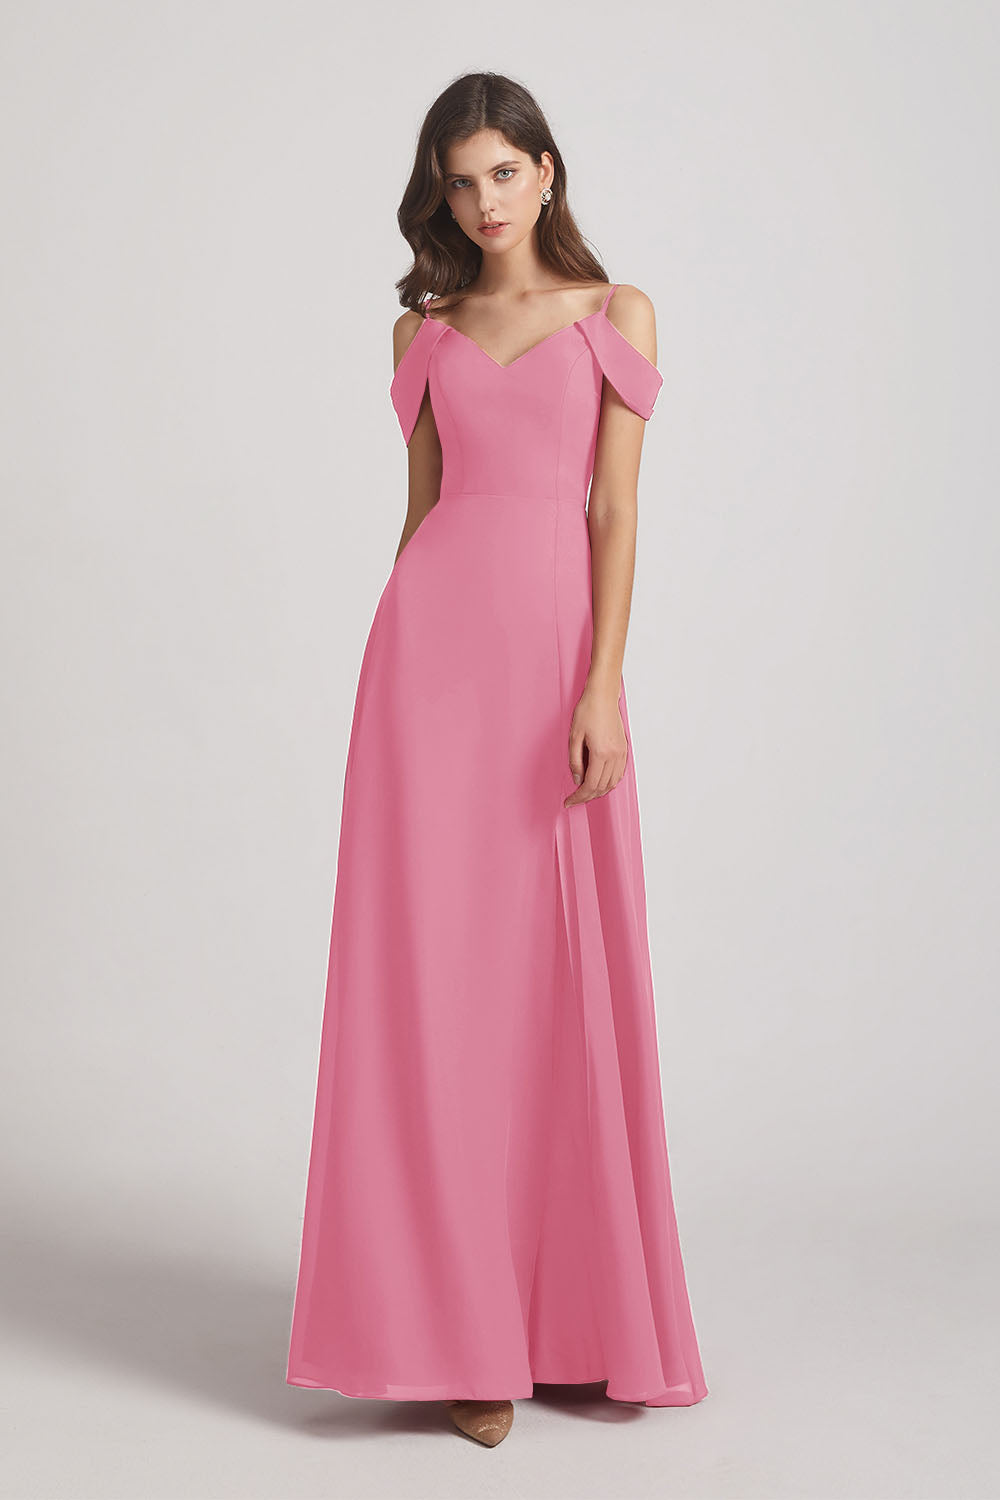 Alfa Bridal Skin Pink Chiffon Cold Shoulder V-Neck Bridesmaid Dresses with Slit (AF0093)